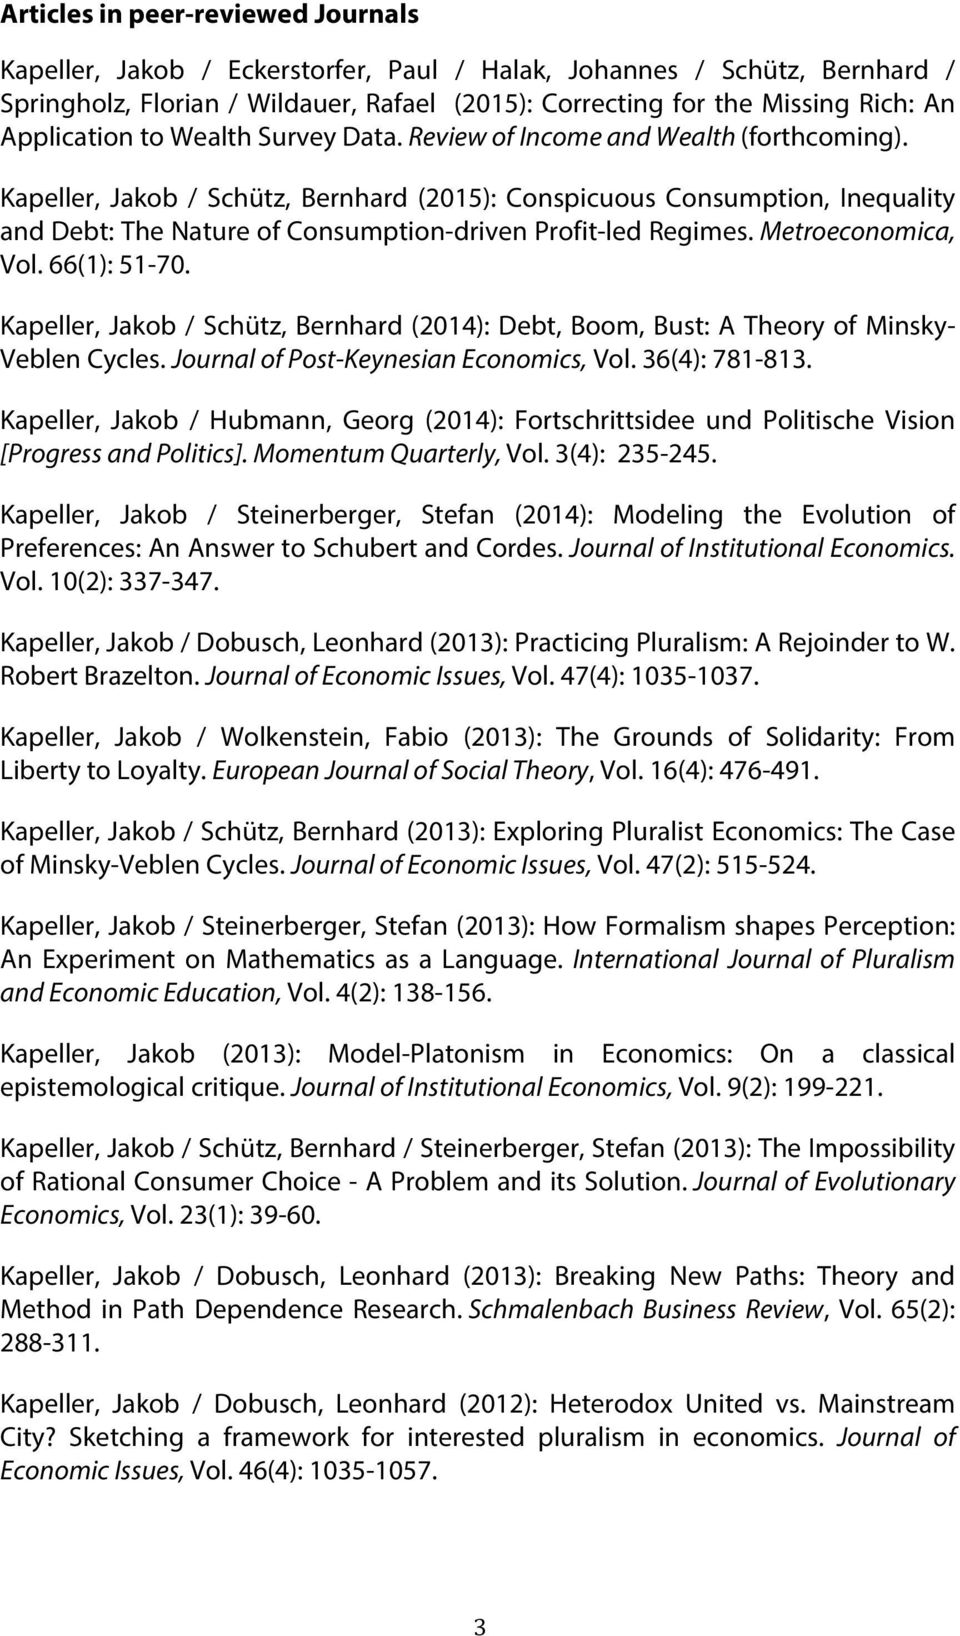 Kapeller, Jakob / Schütz, Bernhard (2015): Conspicuous Consumption, Inequality and Debt: The Nature of Consumption-driven Profit-led Regimes. Metroeconomica, Vol. 66(1): 51-70.